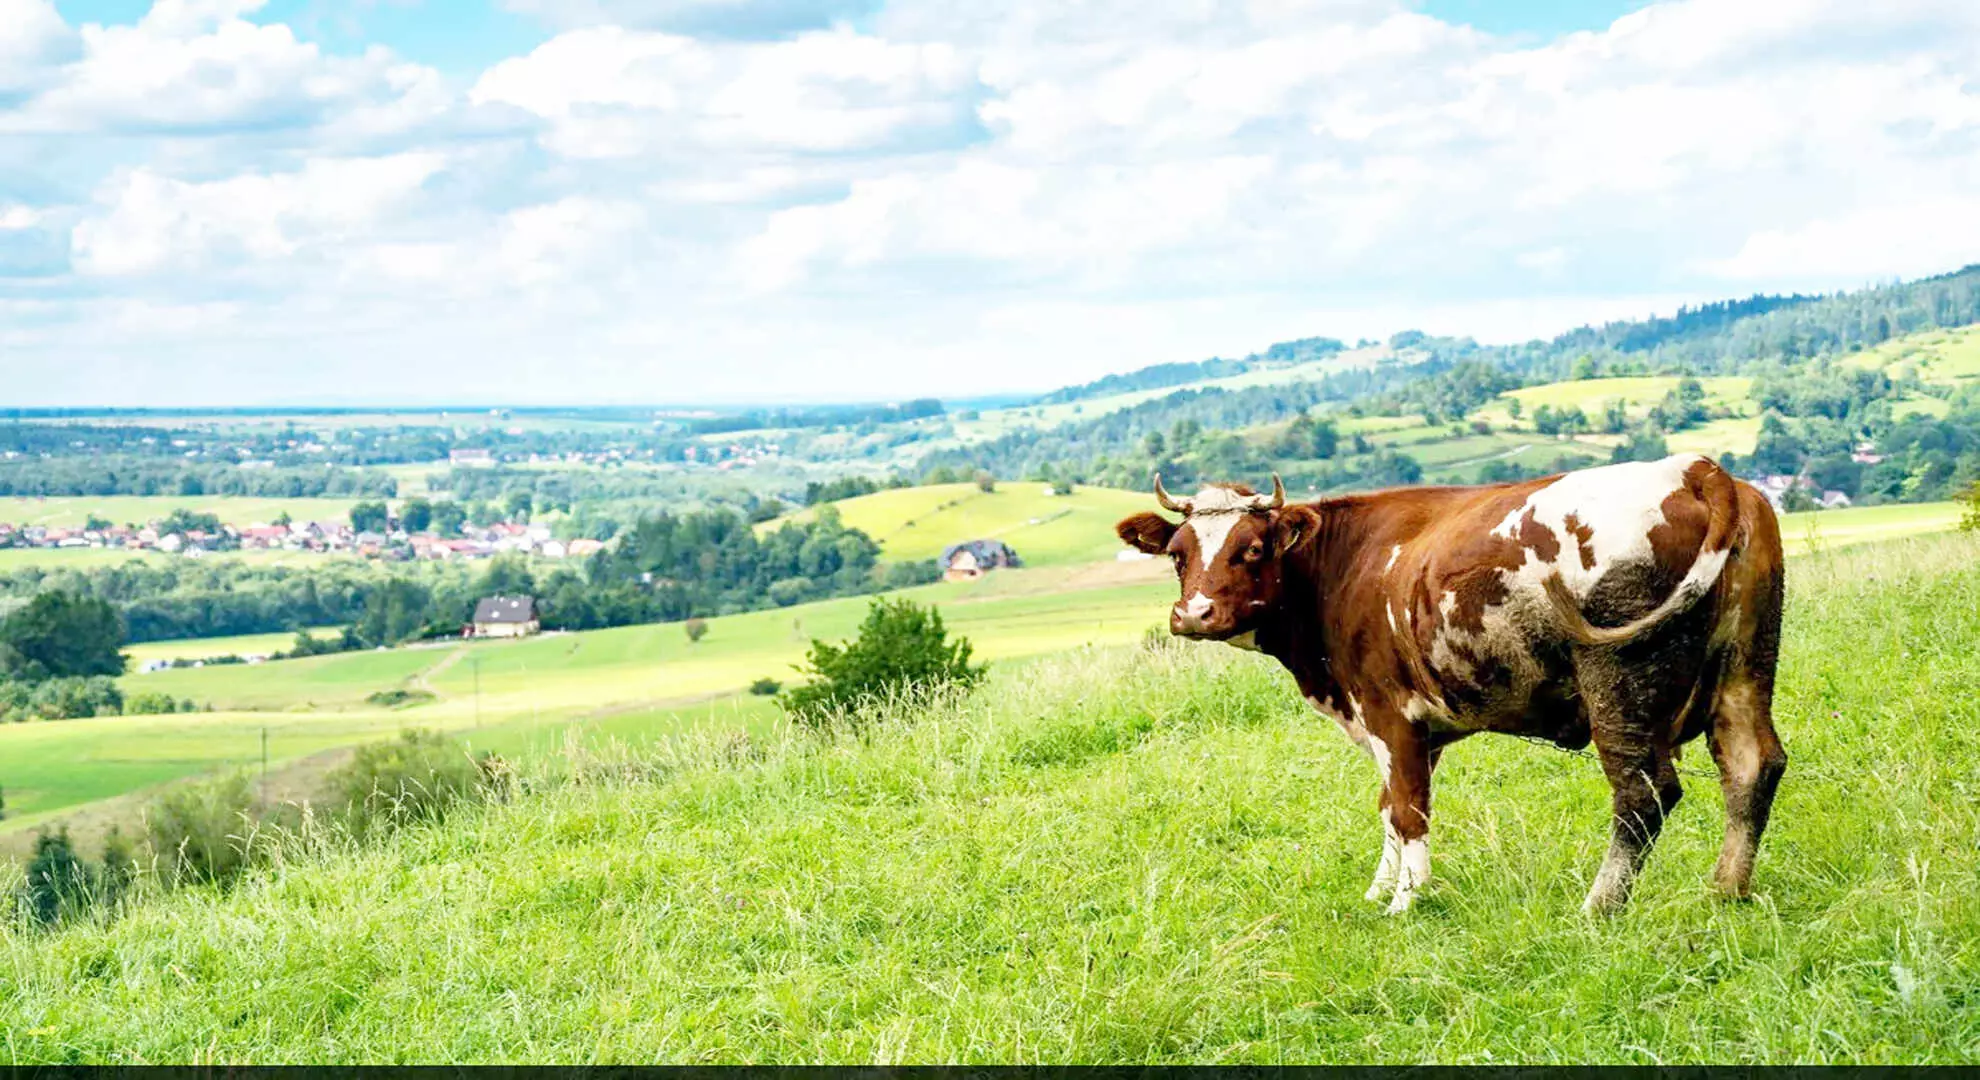 वैज्ञानिकों का कहना है कि आनुवंशिक रूप से संशोधित गाय दूध में मानव इंसुलिन का उत्पादन करती है